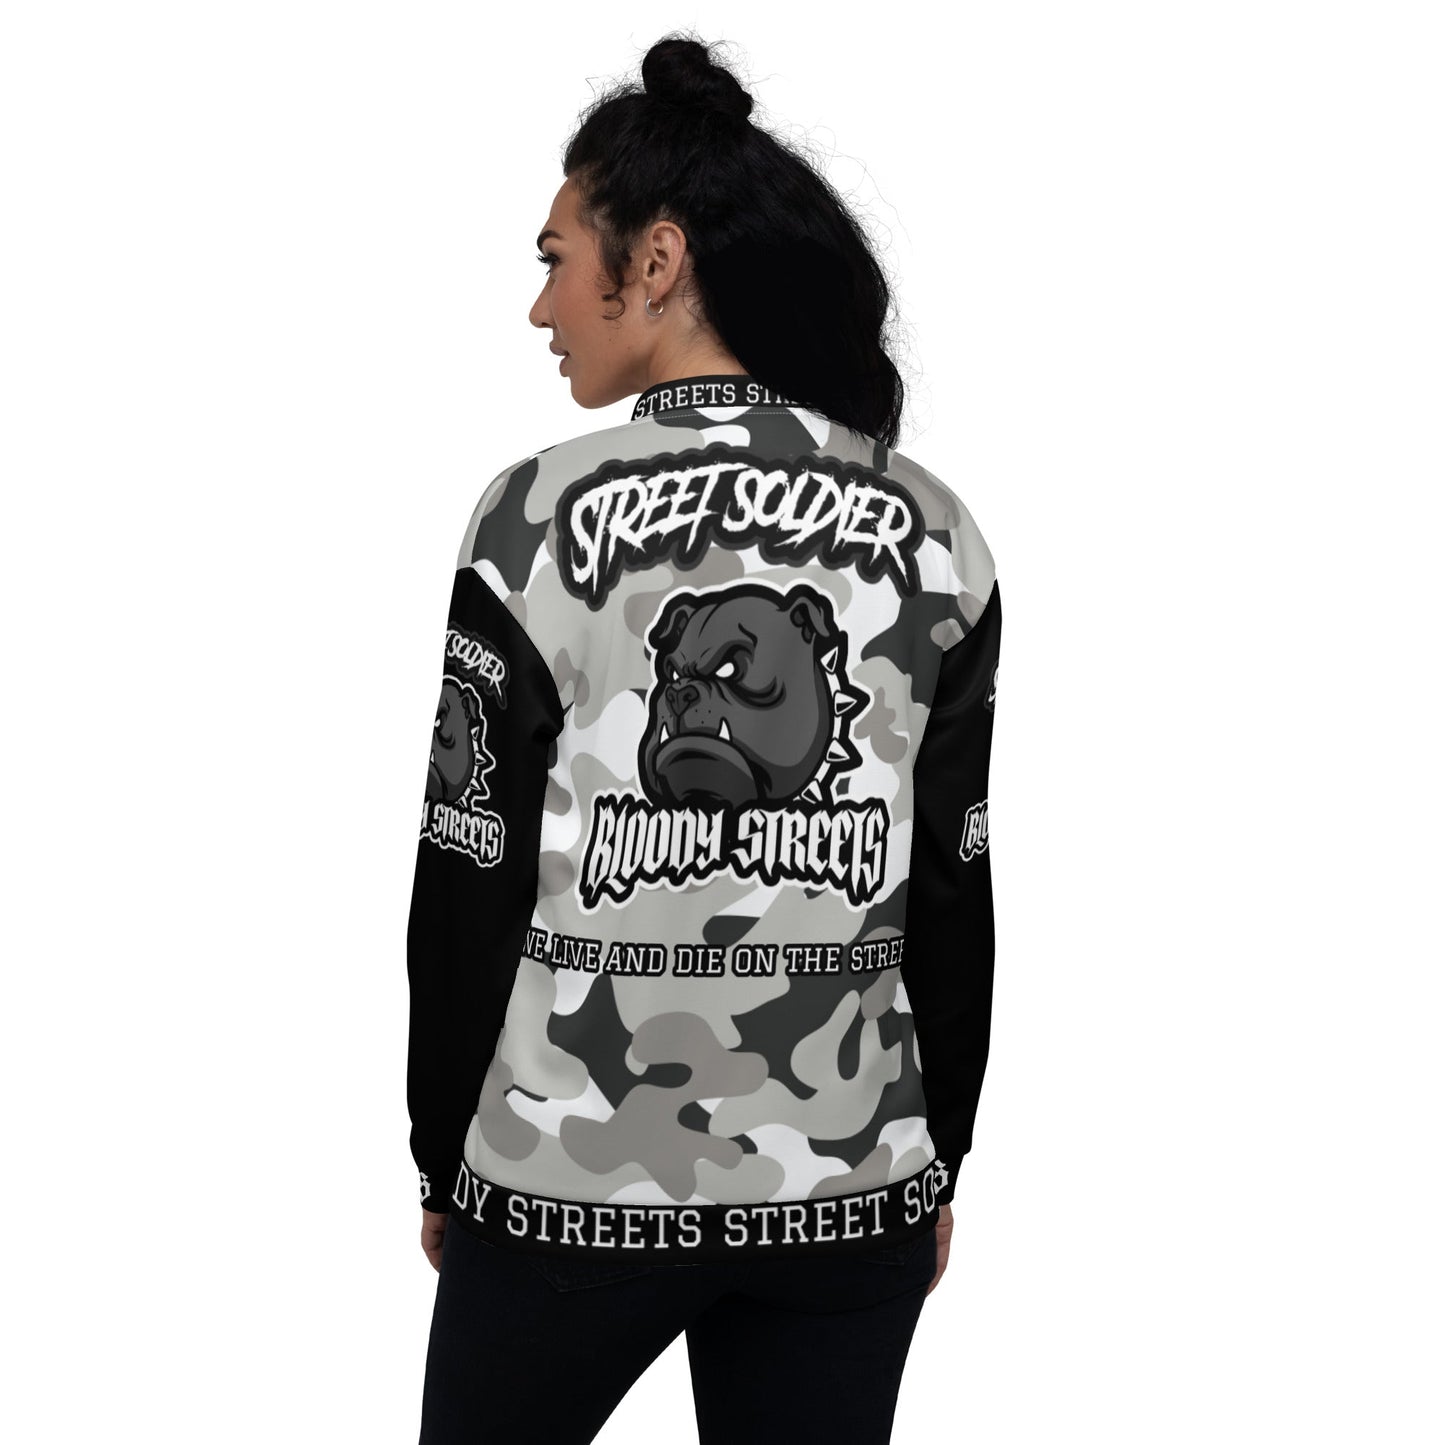 Streetwear Jacke: Camouflage Bulldog Jacket Street Soldier - Die ultimative Bomberjacke - BLOODY-STREETS.DE Streetwear Herren und Damen Hoodies, T-Shirts, Pullis